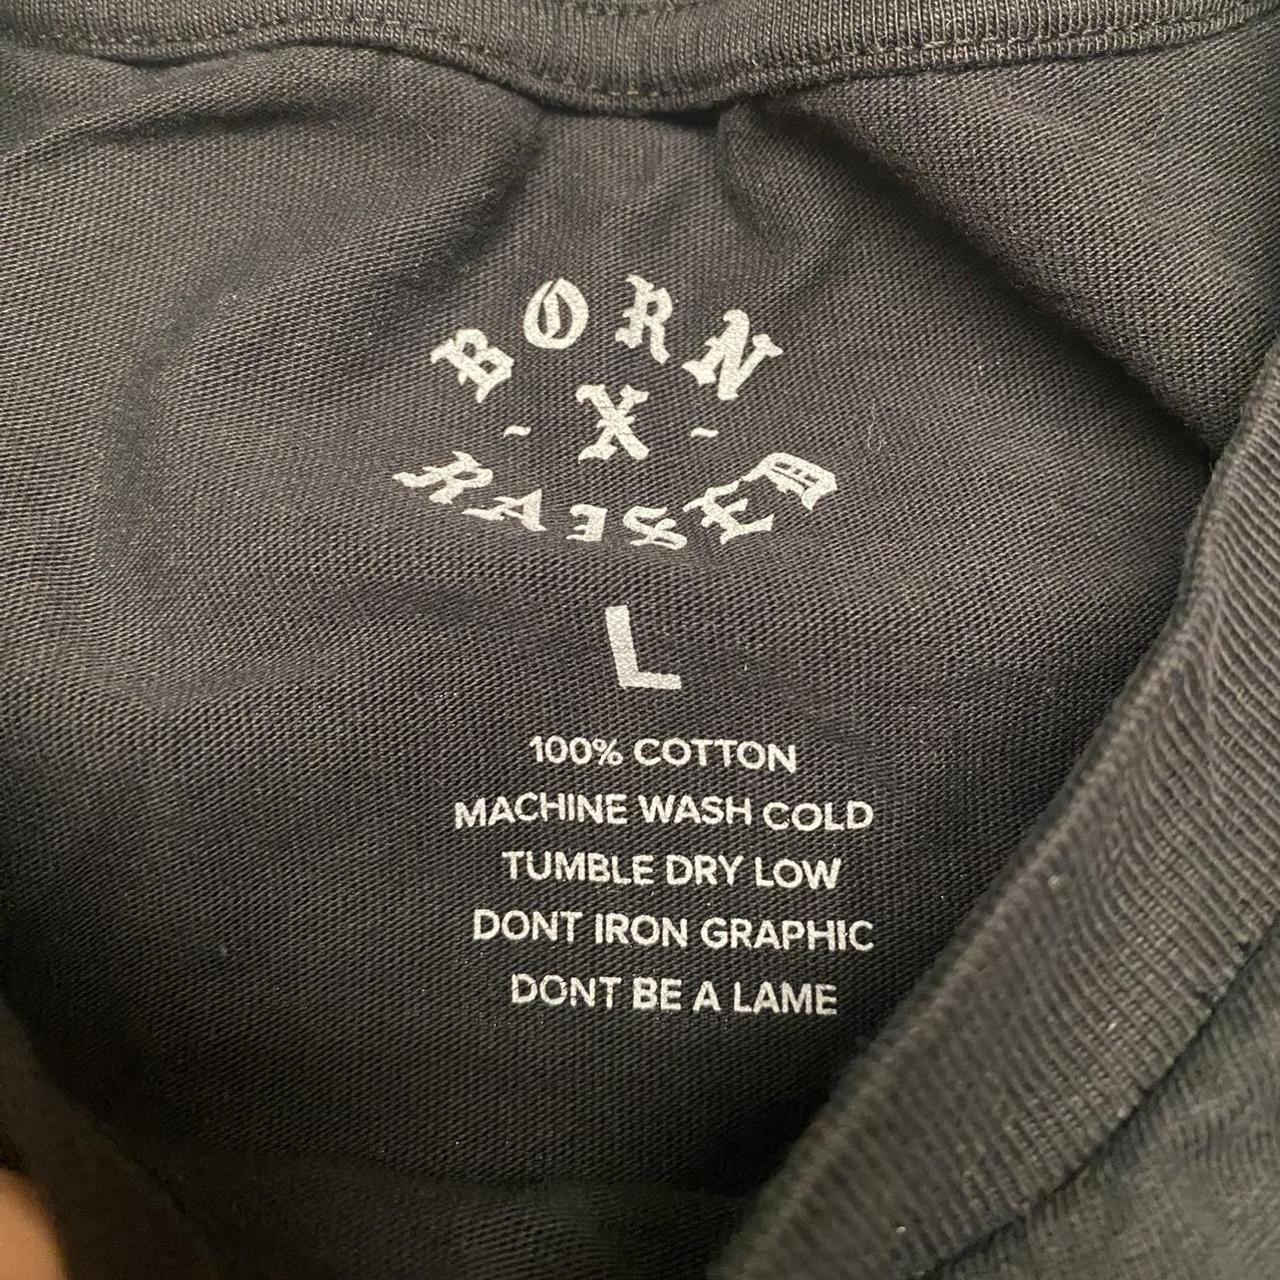 Born x Raised Men's T-Shirt - Black - L